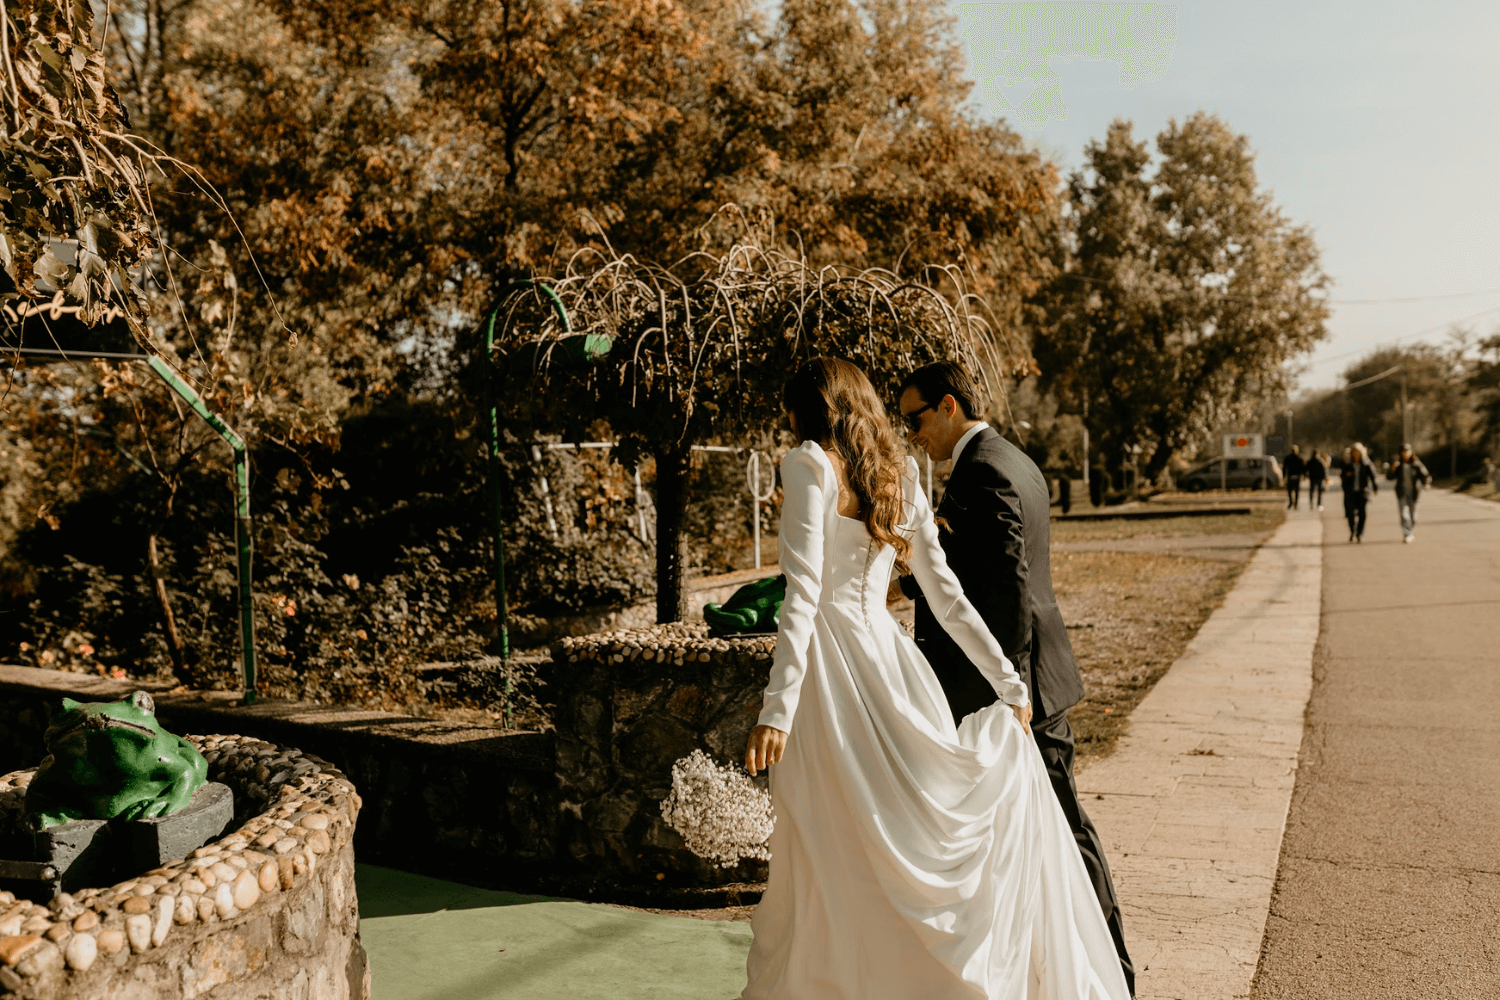 Un couple de jeunes mariés de dos, la mariée tenant un bouquet de fleurs blanches dans une main et sa robe dans l’autre.